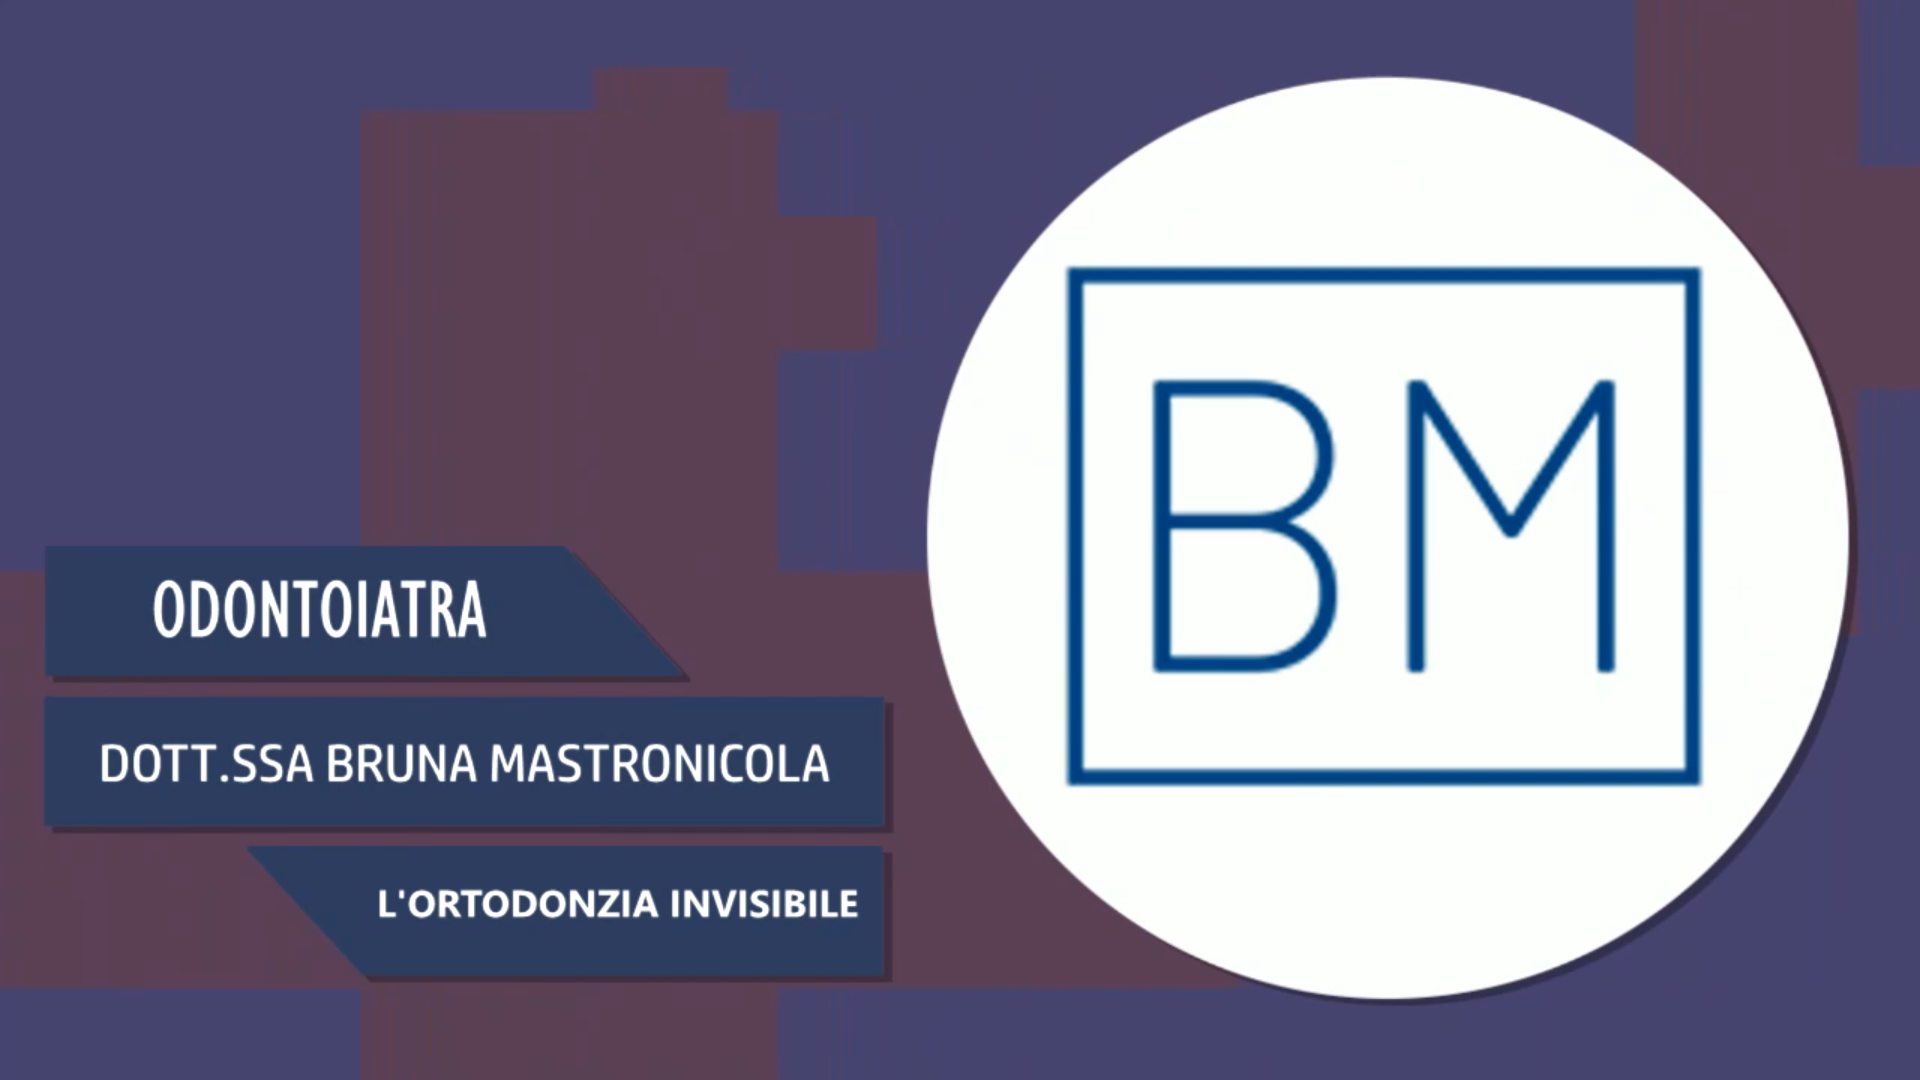 Intervista alla Dott.ssa Bruna Mastronicola – L’ortodonzia invisibile